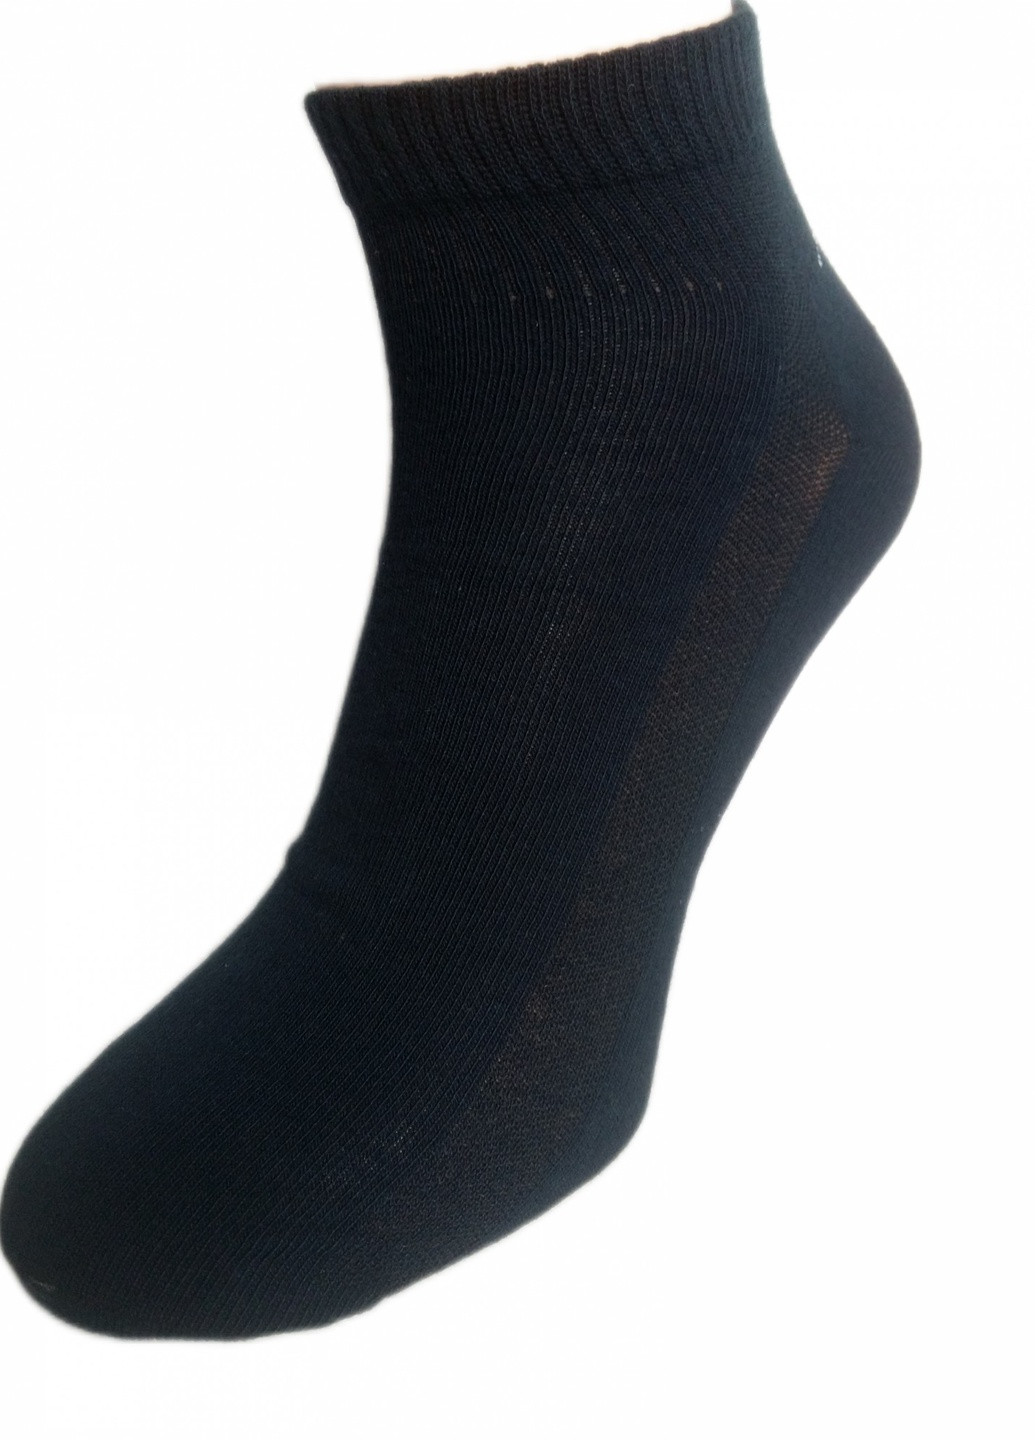 Шкарпетки Нова пара 432, спорт 39-41р. колір-джинс НОВА ПАРА коротка висота з ущільненім носком однотонні темно-сині спортивні